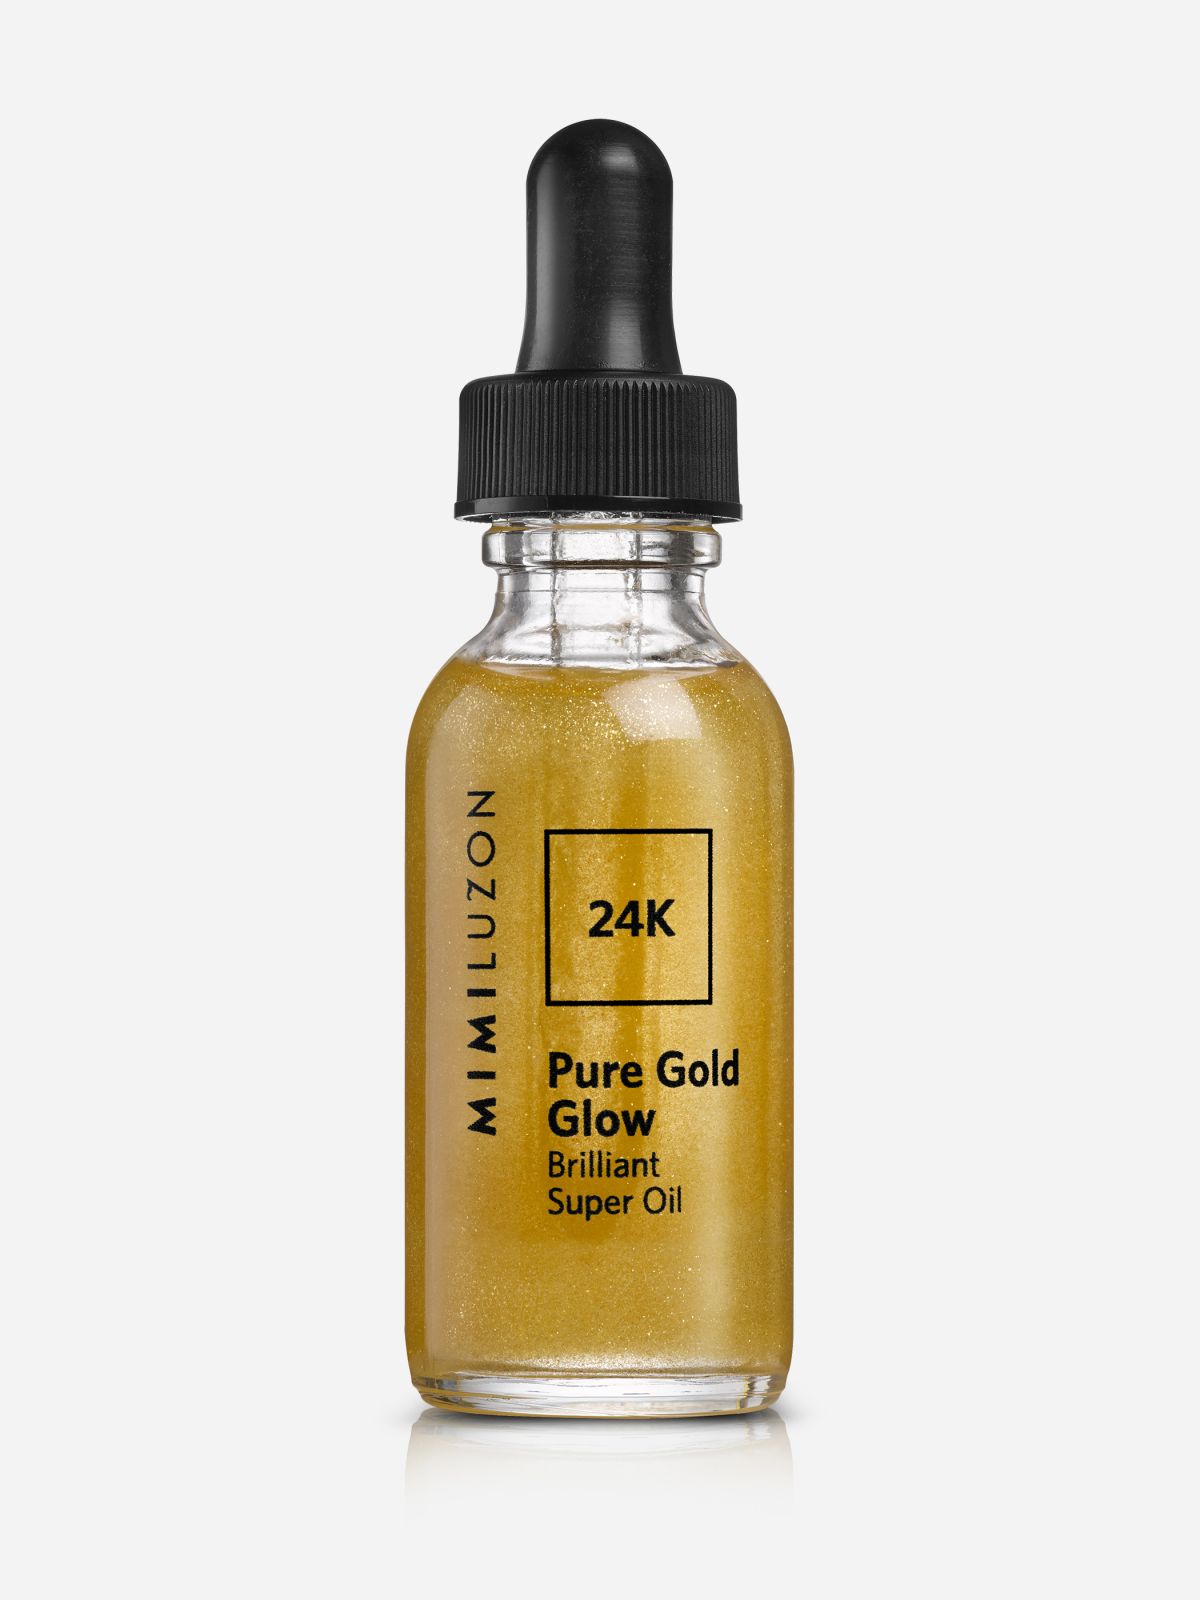  שמן זהב הזנה 24K Pure Gold Glow Brilliant Super Oil של MIMI LUZON